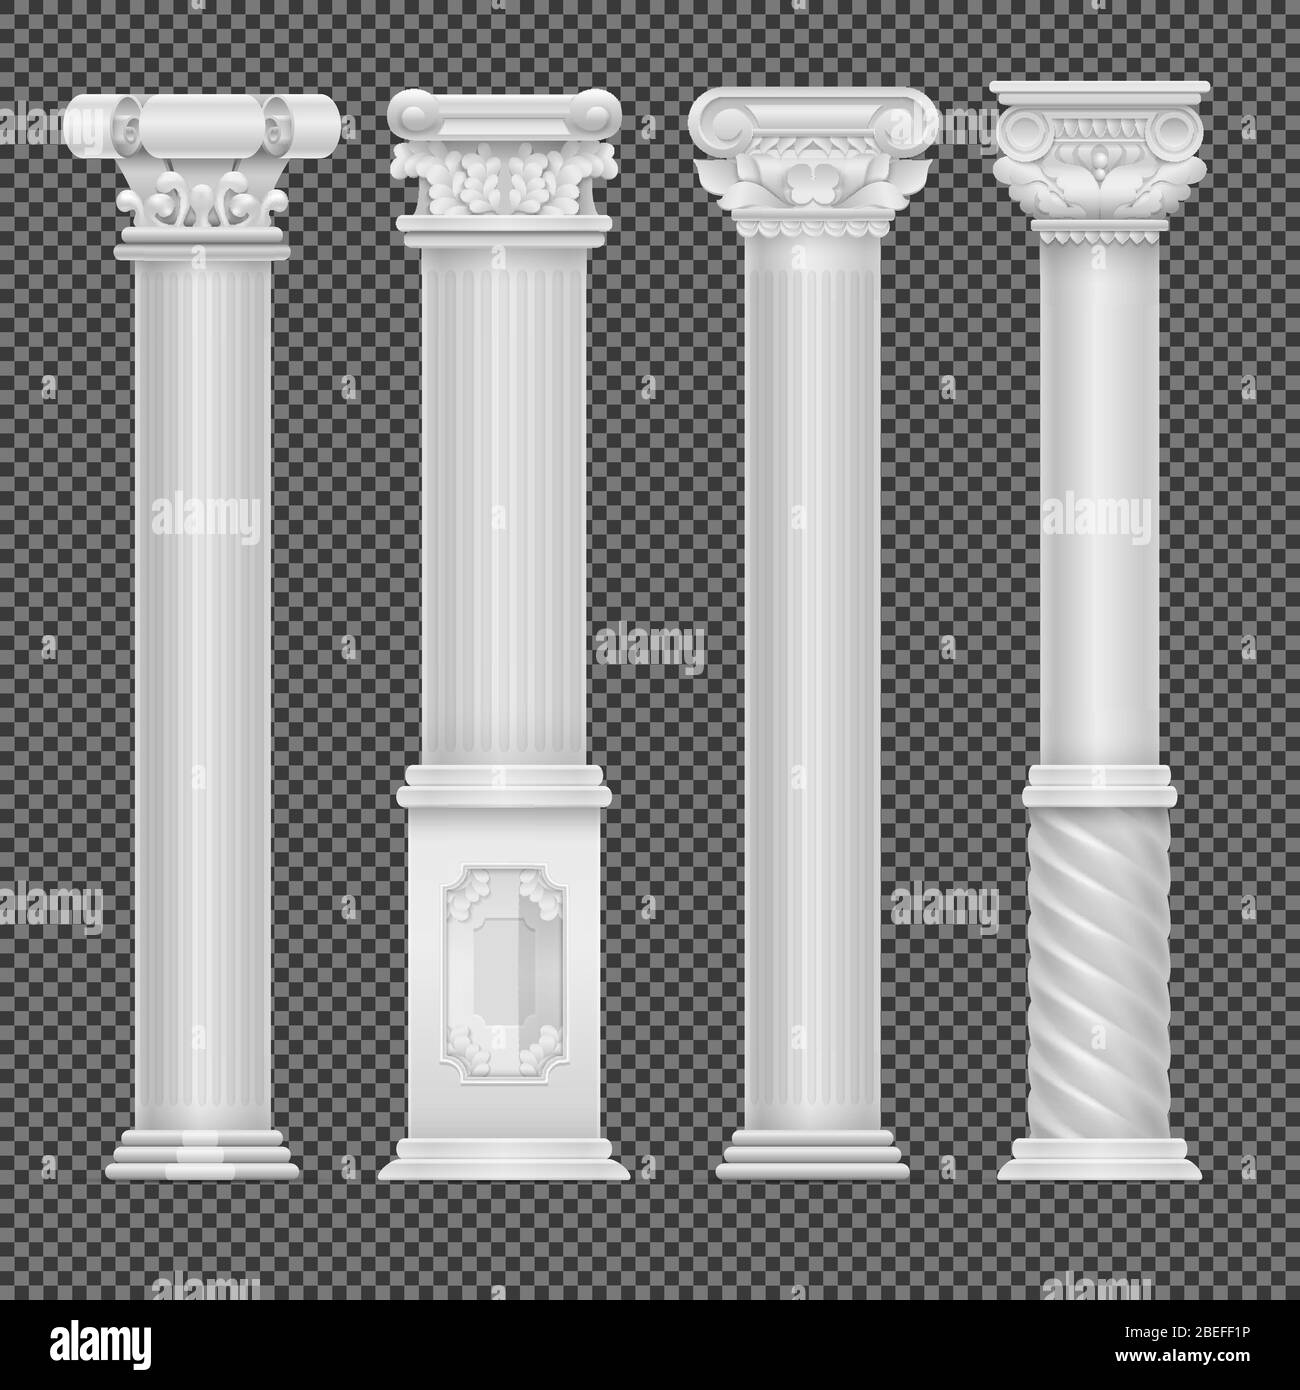 Columna romana antigua blanca realista aislada sobre fondo transparente. Columna y pilar clásico, ilustración vectorial Ilustración del Vector